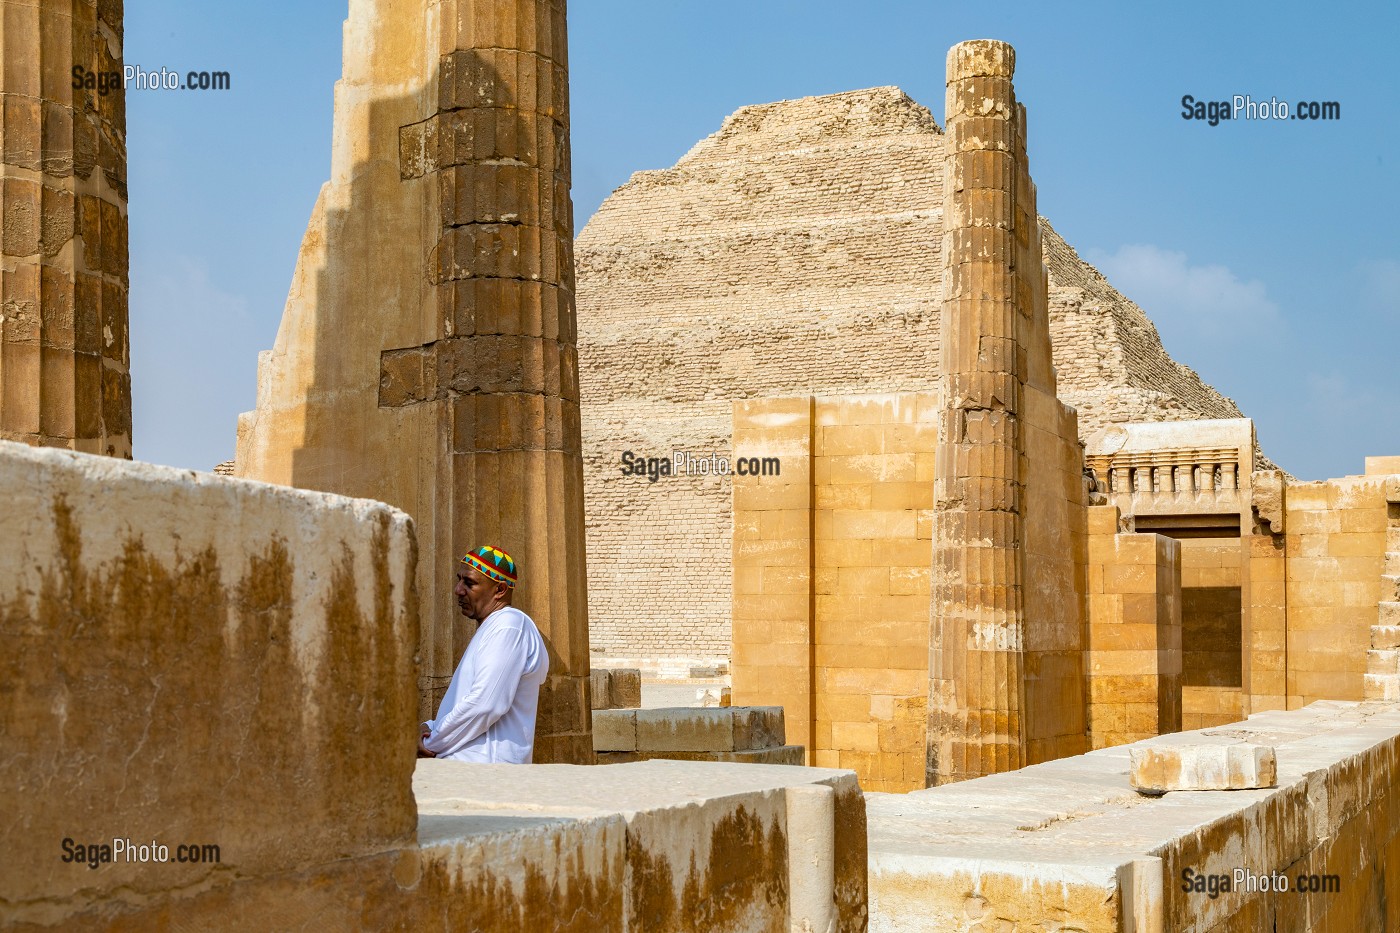 VESTIGES DU TEMPLE ET PYRAMIDE A DEGRES DE DJESER, PLUS ANCIEN EDIFICE EN PIERRE ET PREMIERE PYRAMIDE DE L'HISTOIRE, NECROPOLE DE SAQQARAH DE L'ANCIEN EMPIRE, REGION DE MEMPHIS ANCIENNE CAPITALE DE L'EGYPTE ANTIQUE, LE CAIRE, EGYPTE, AFRIQUE 